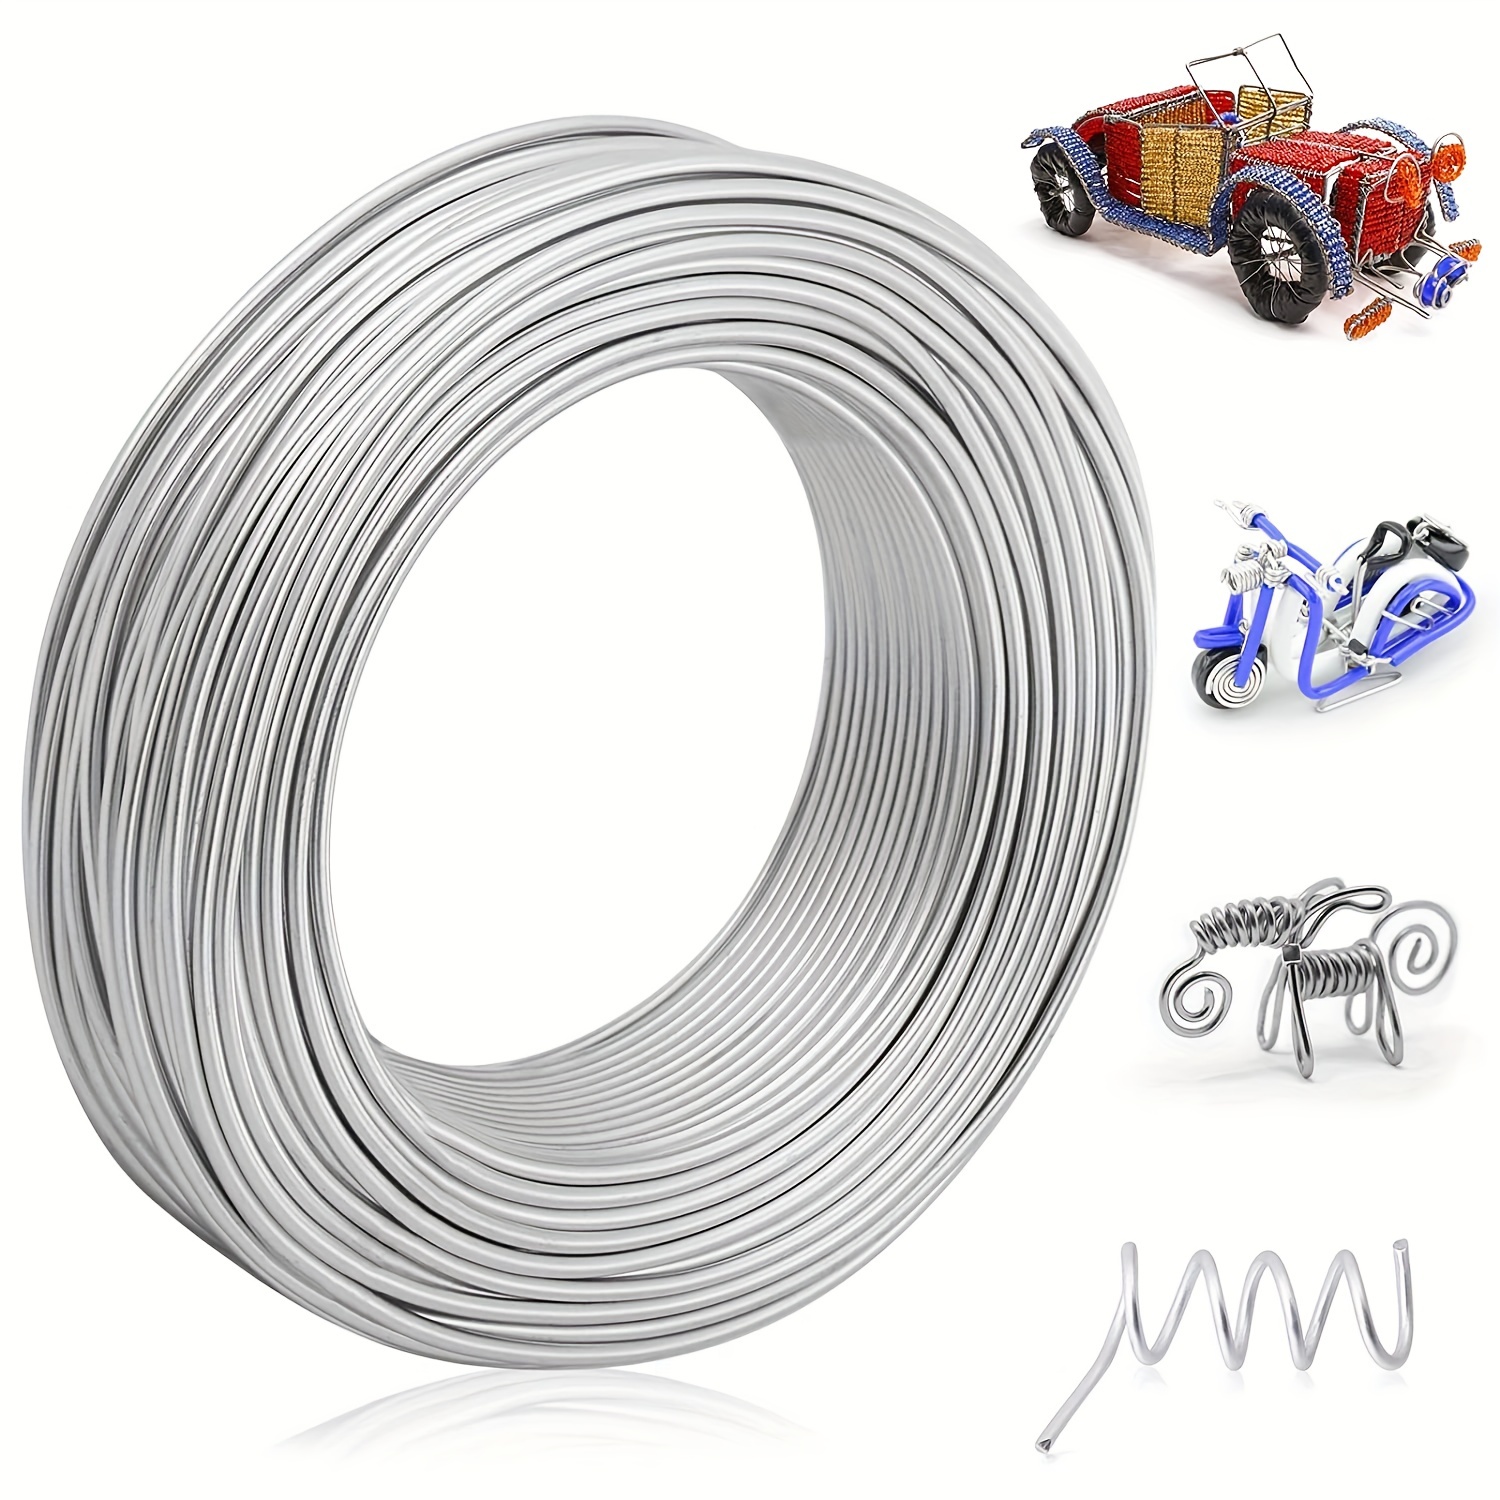 CoiTek 18 Gauge (1 mm) Aluminum Craft Wire 328 FT (100 m) Bendable Alu